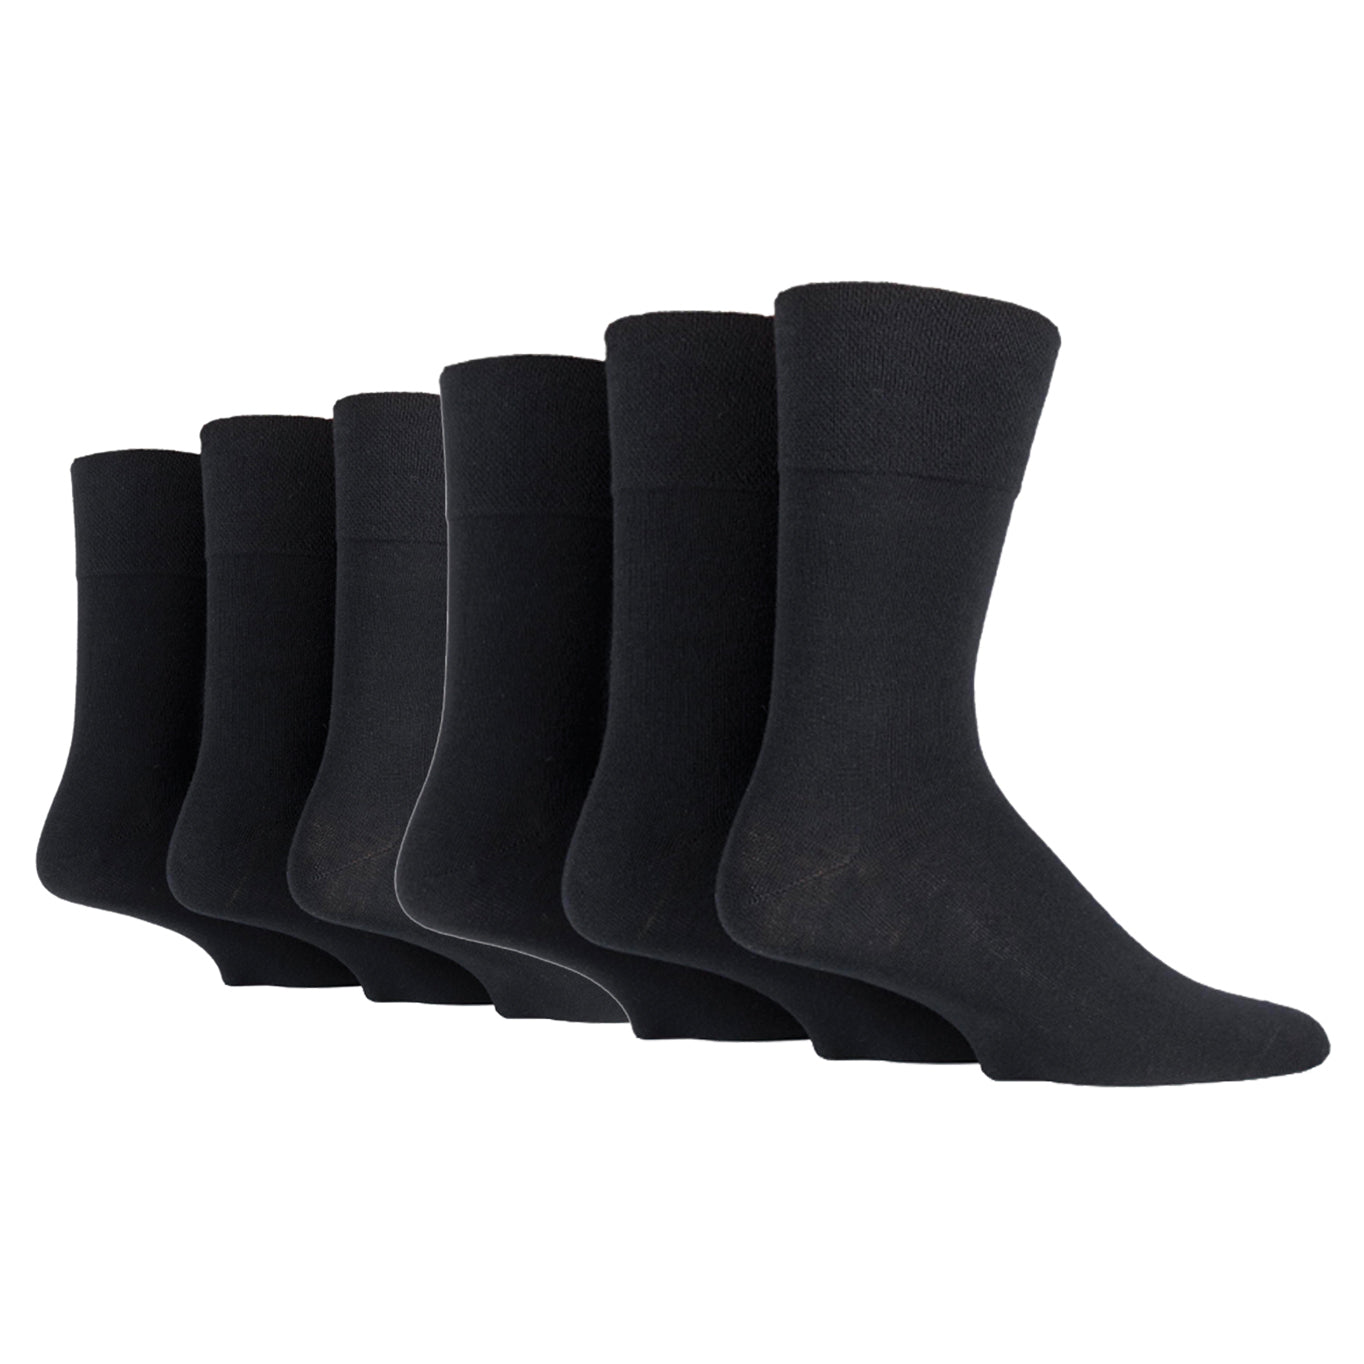 6 Pairs Men's Gentle Grip Bamboo Socks - Black